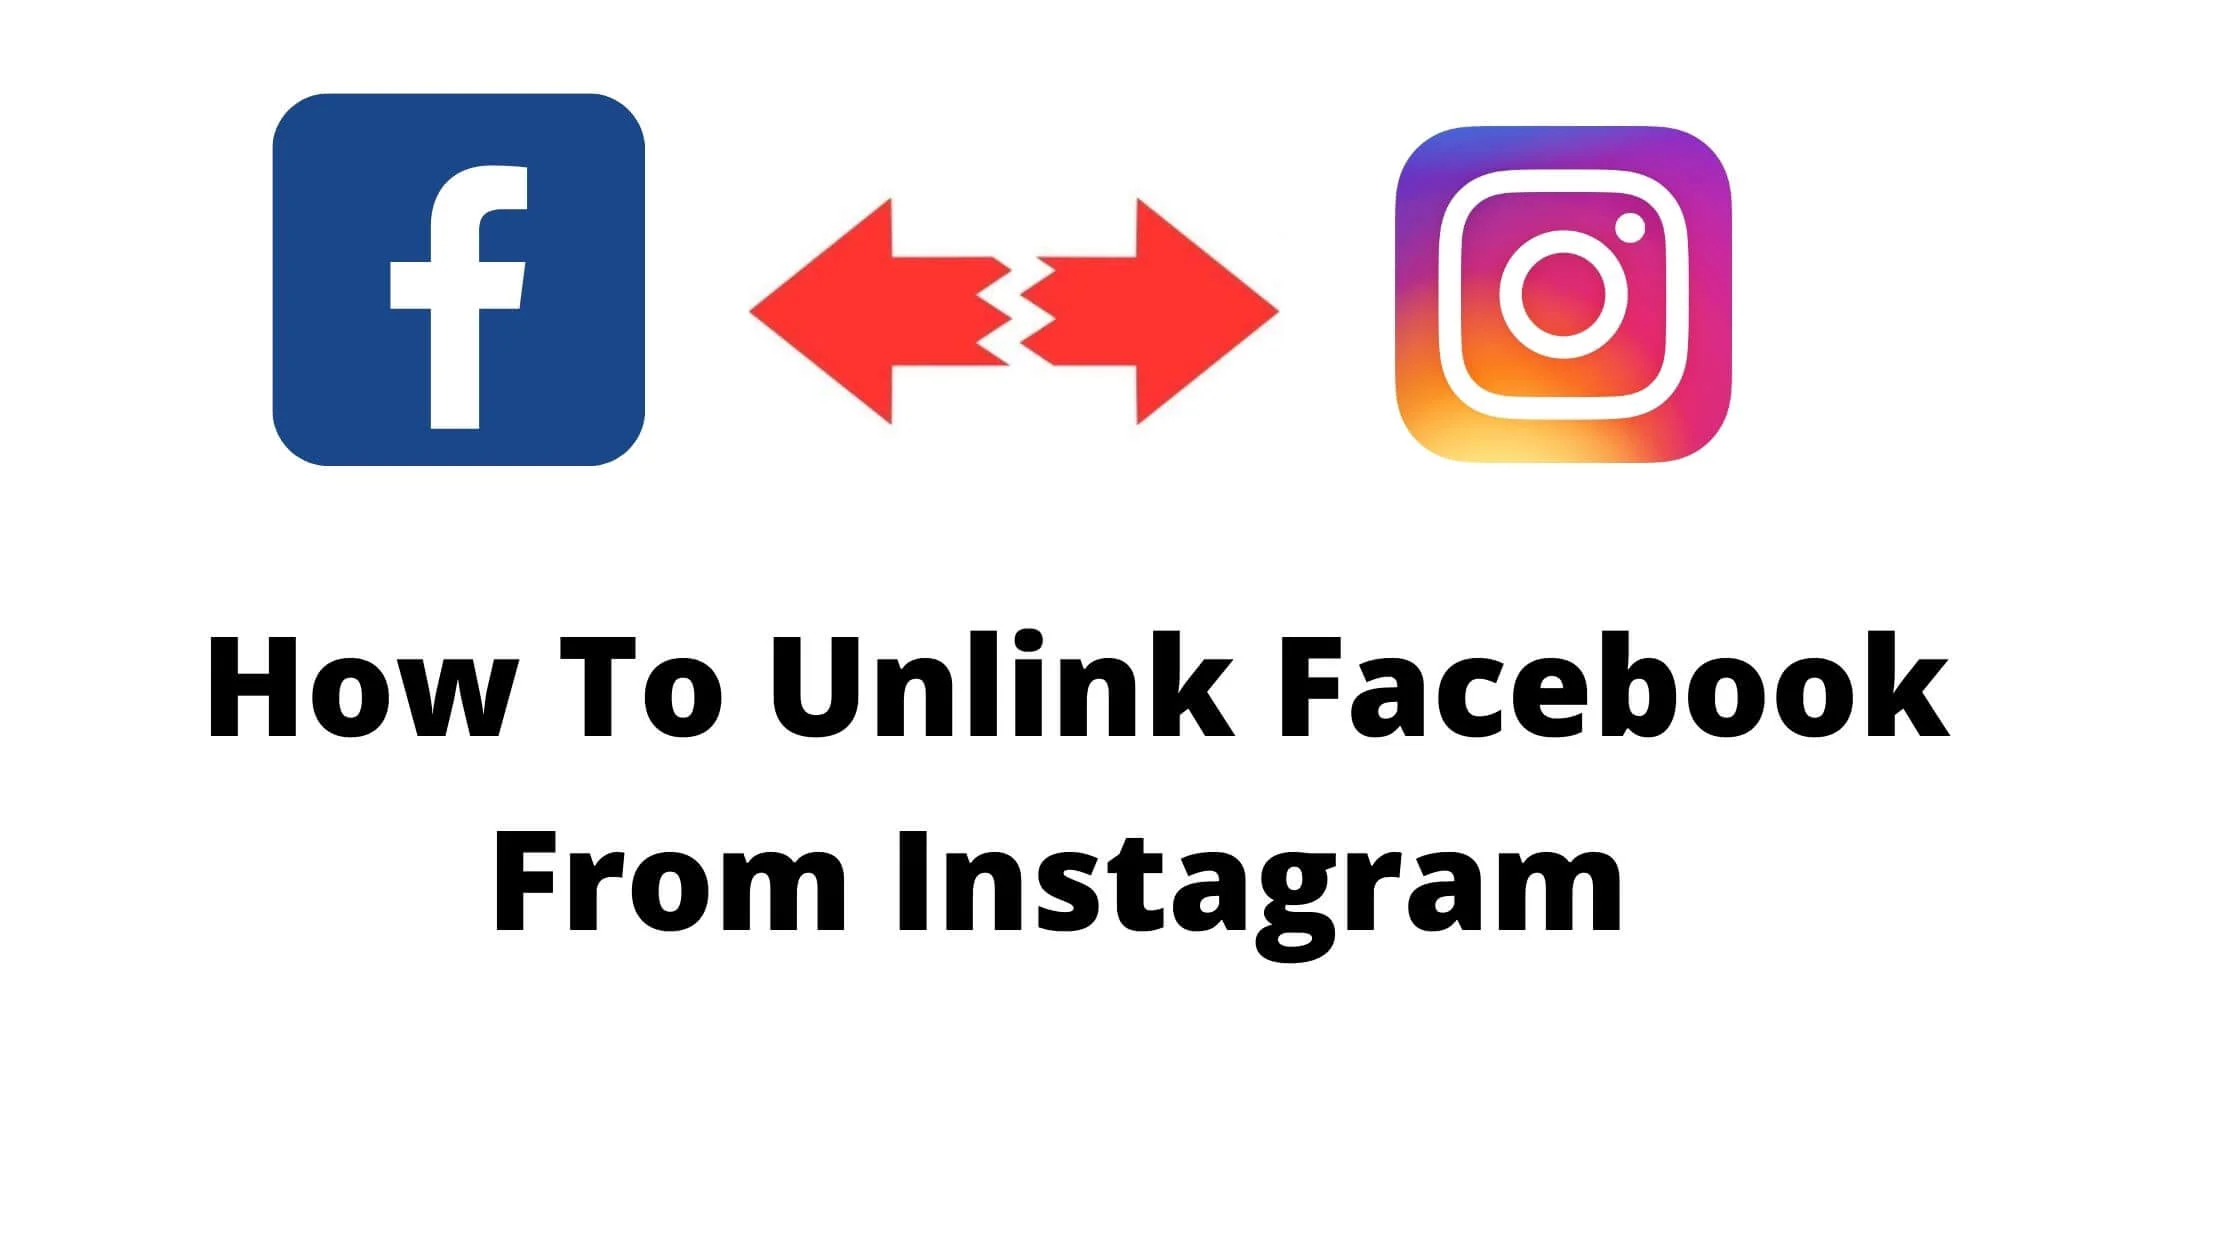 Unlink Facebook From Instagram